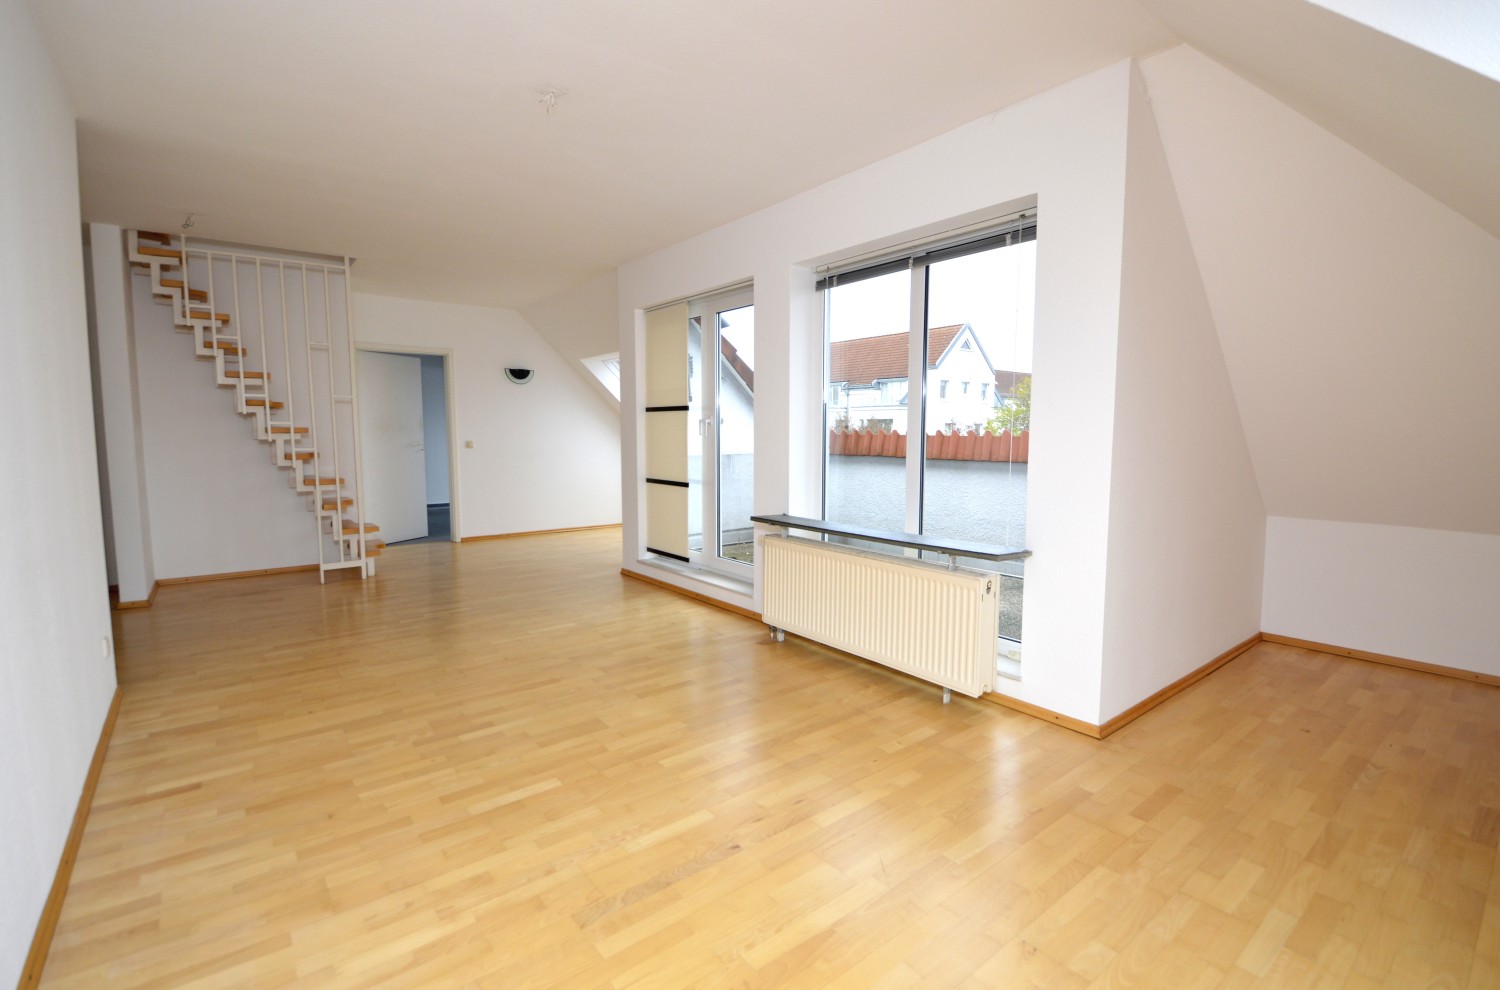 AP Immobilien GmbH - Ihr IVD Immobilienmakler aus Mainz - 65199 Wiesbaden